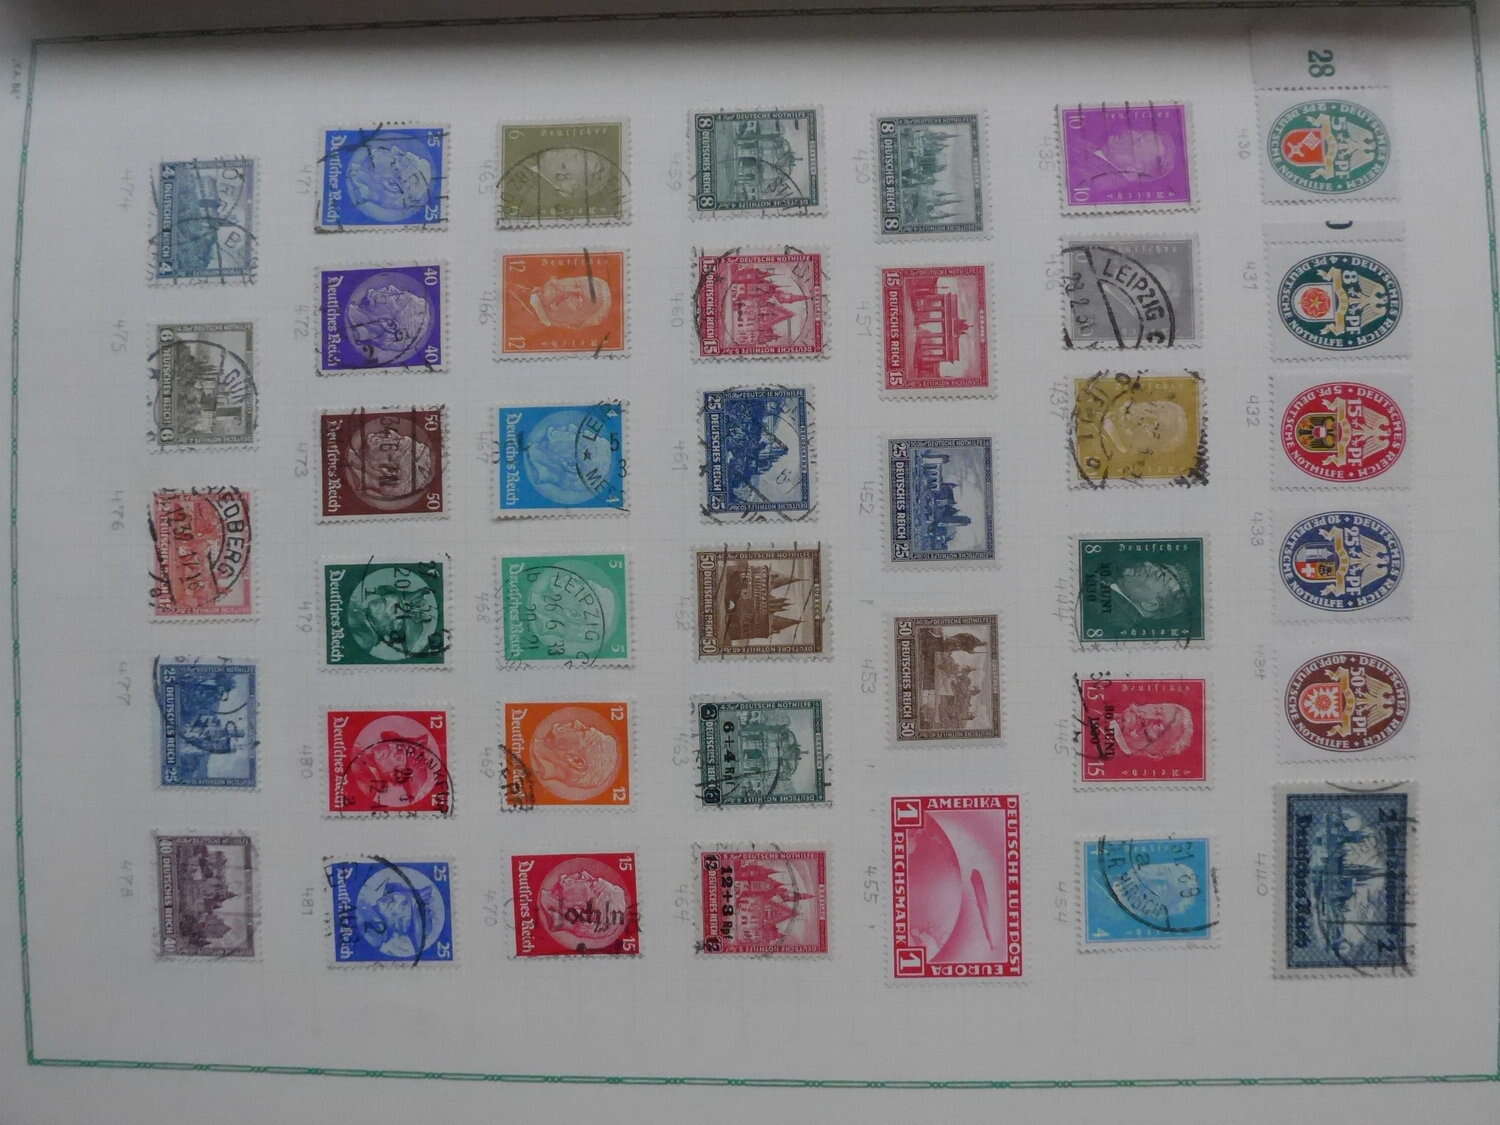 Lot 12 - sammlungen und posten sammlernachlässe -  Deutsche Briefmarken AG 6th Large Lot Auction Deutsche Briefmarken AG